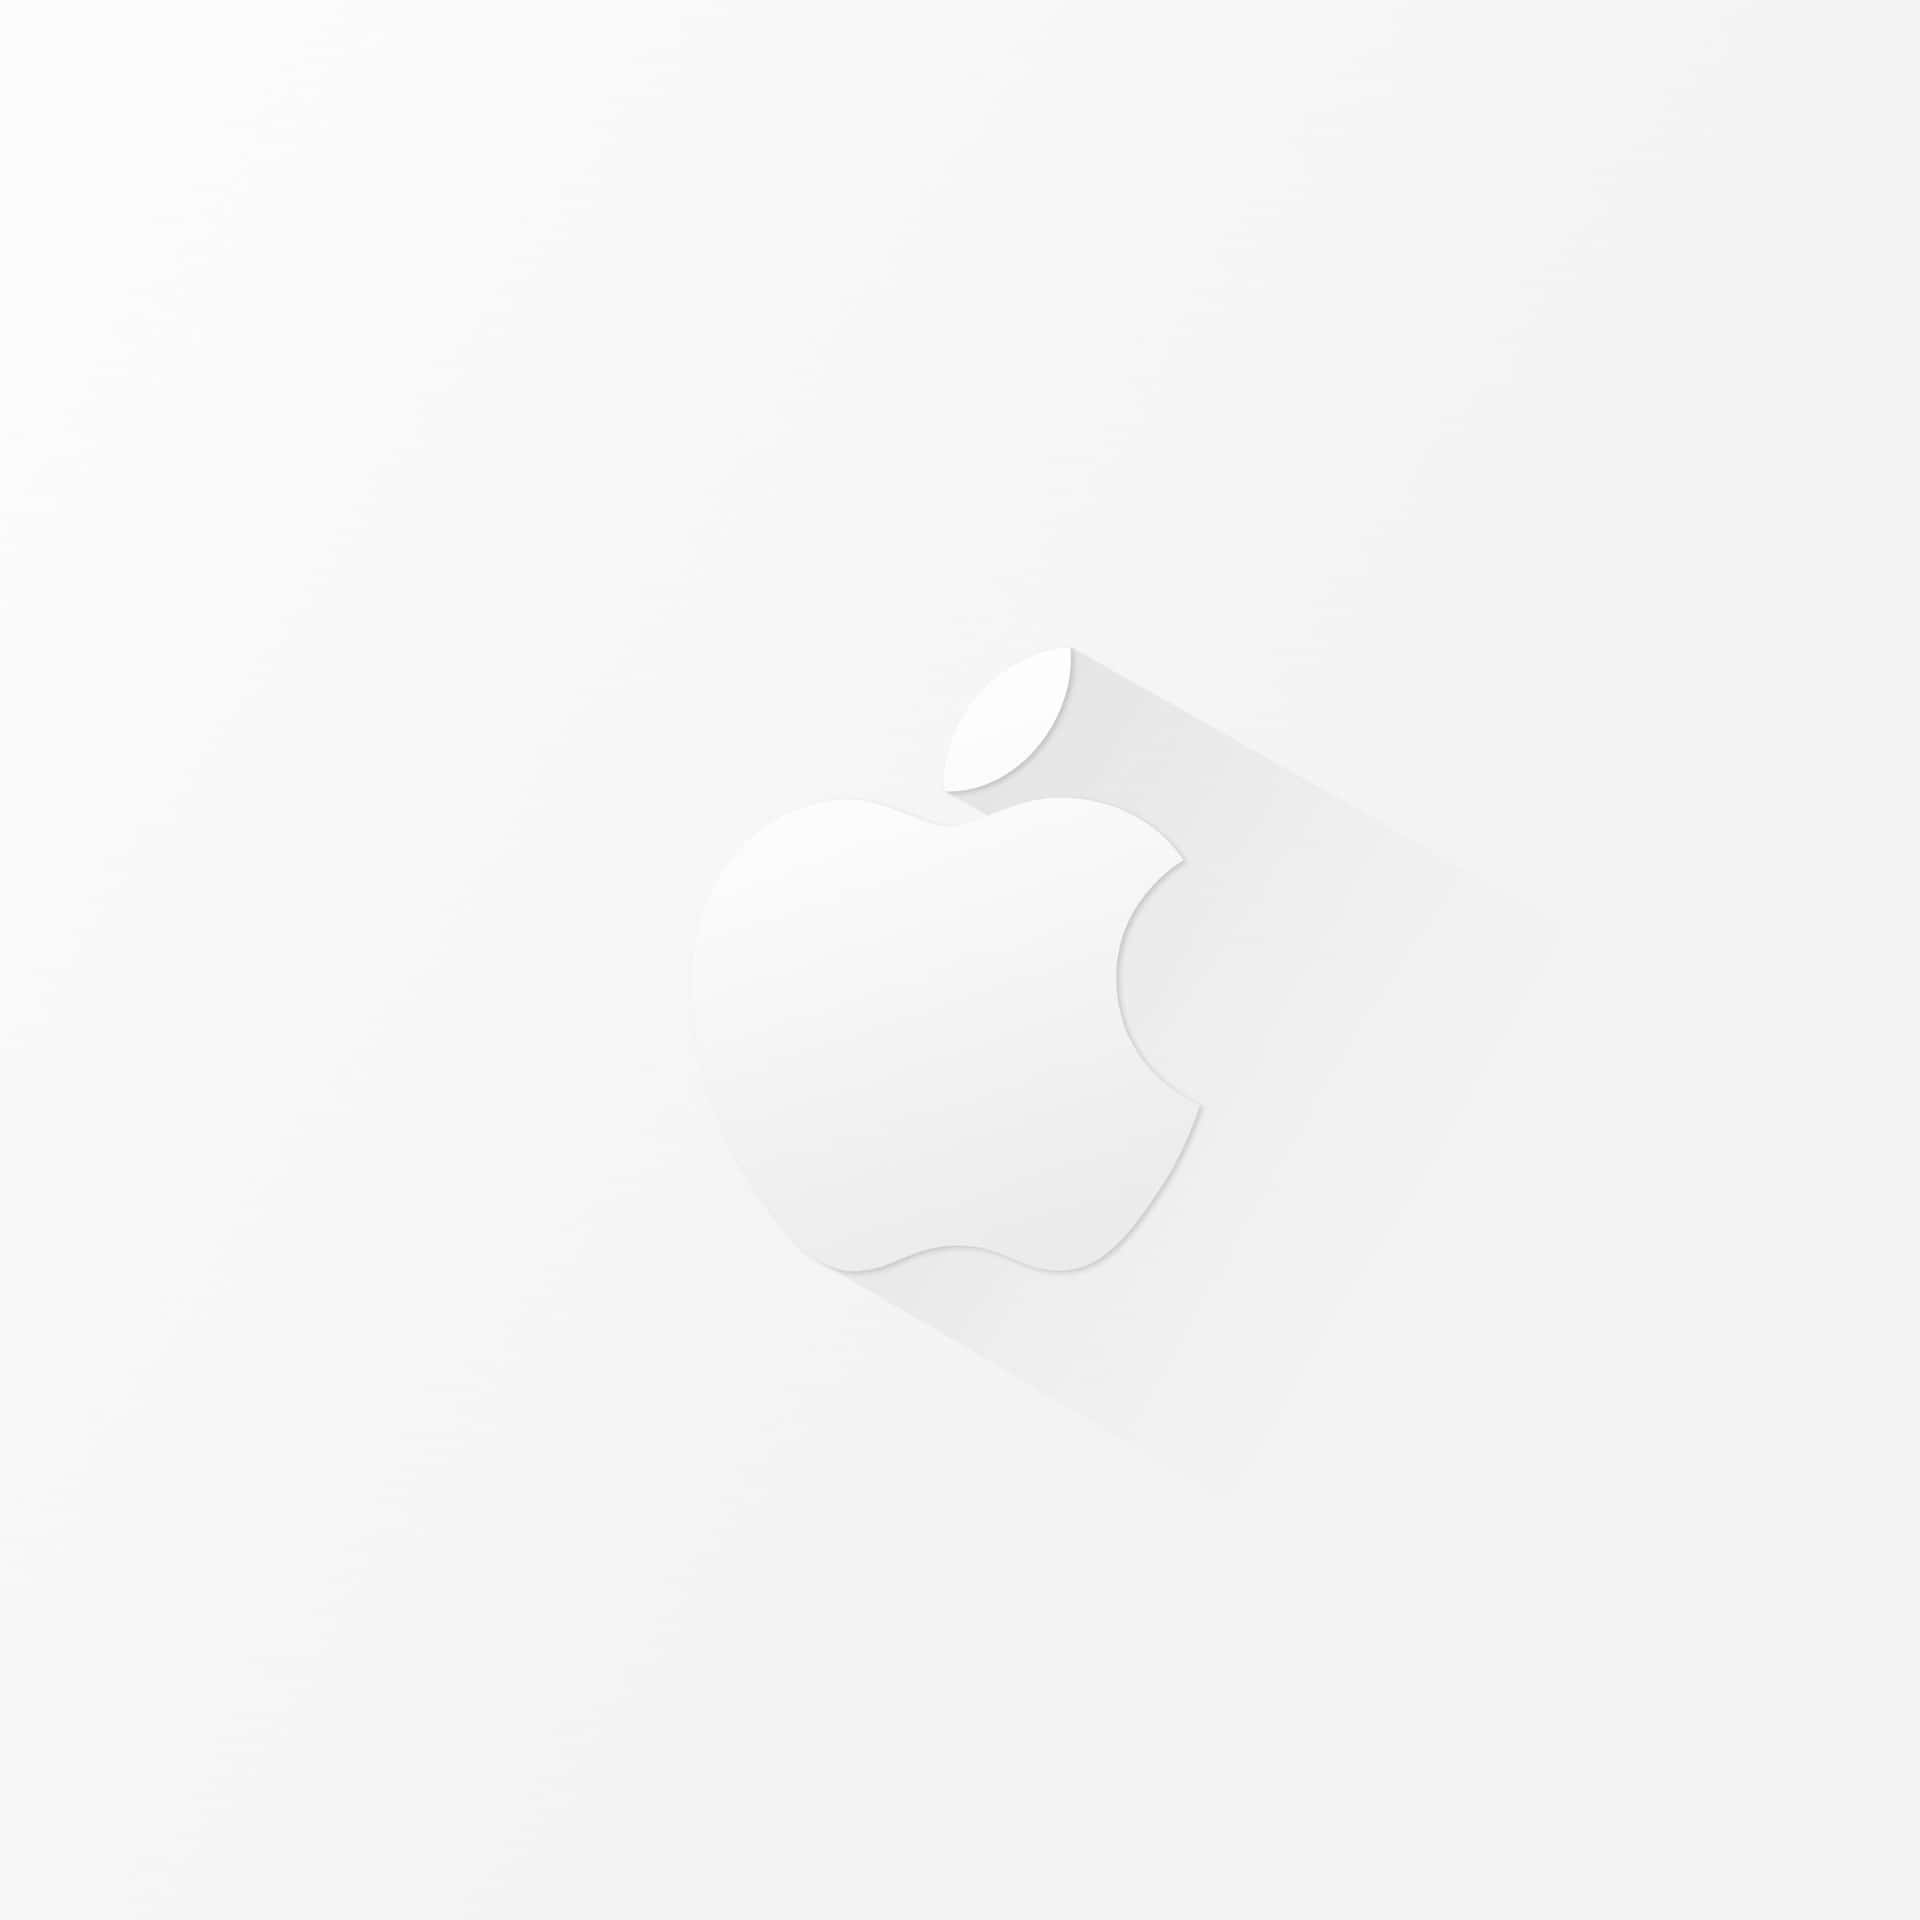 Logotipominimalista De Apple En Blanco Para Ipad. Fondo de pantalla